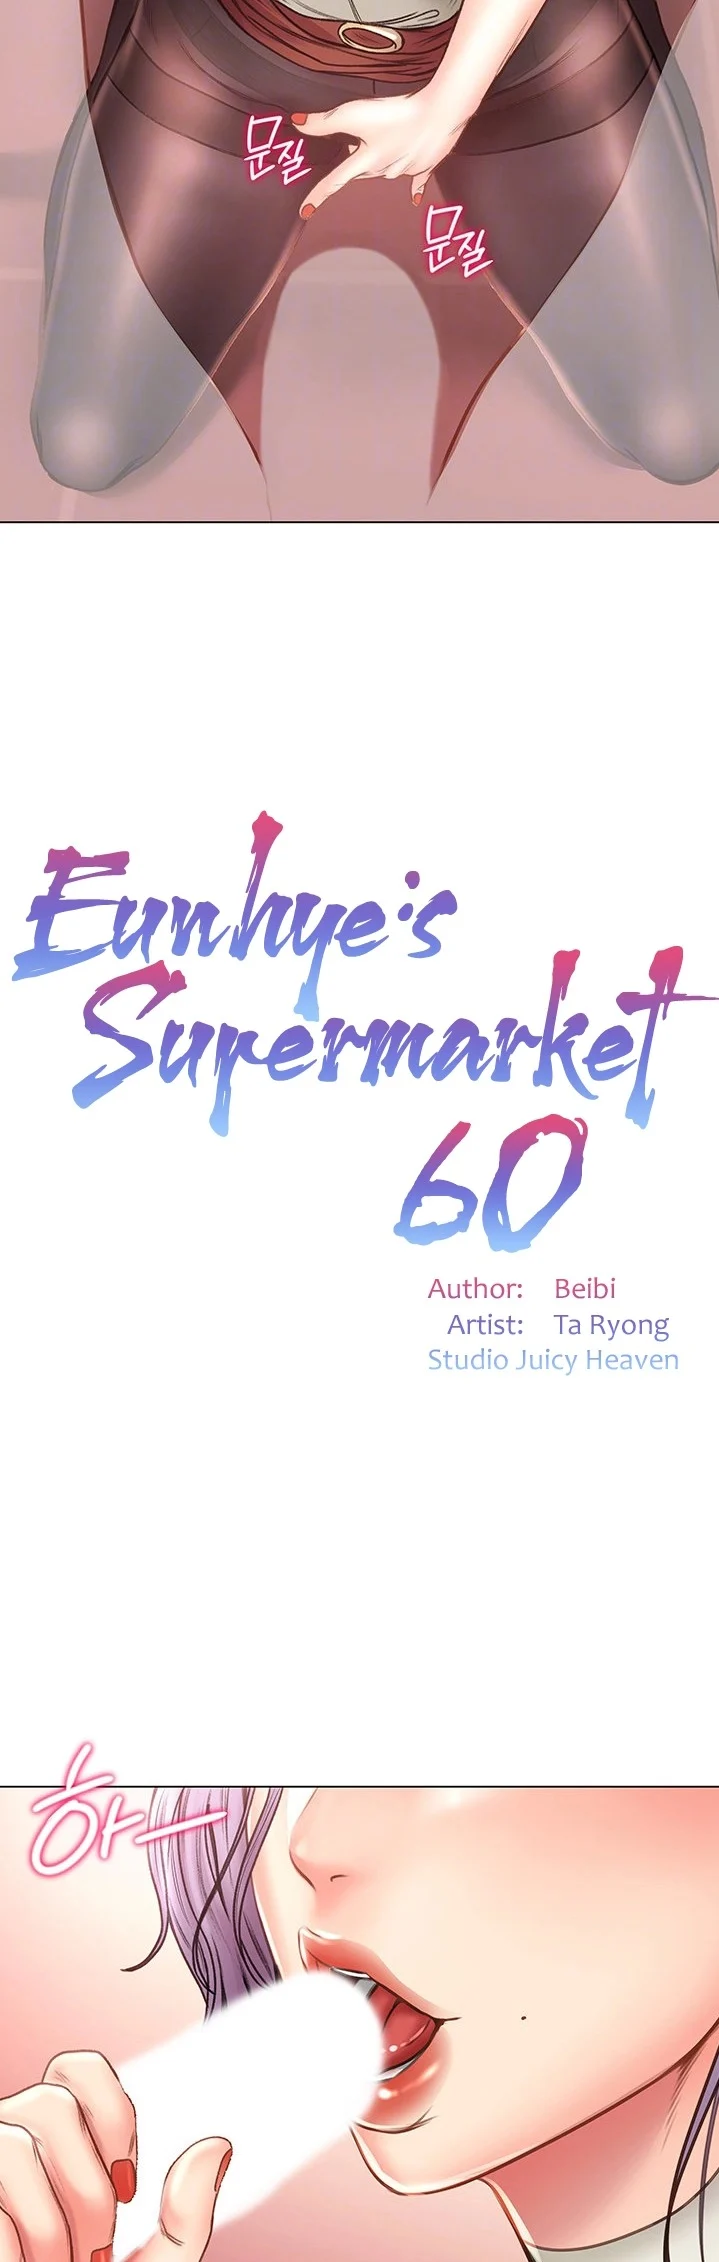 Eunhye's Supermarket image